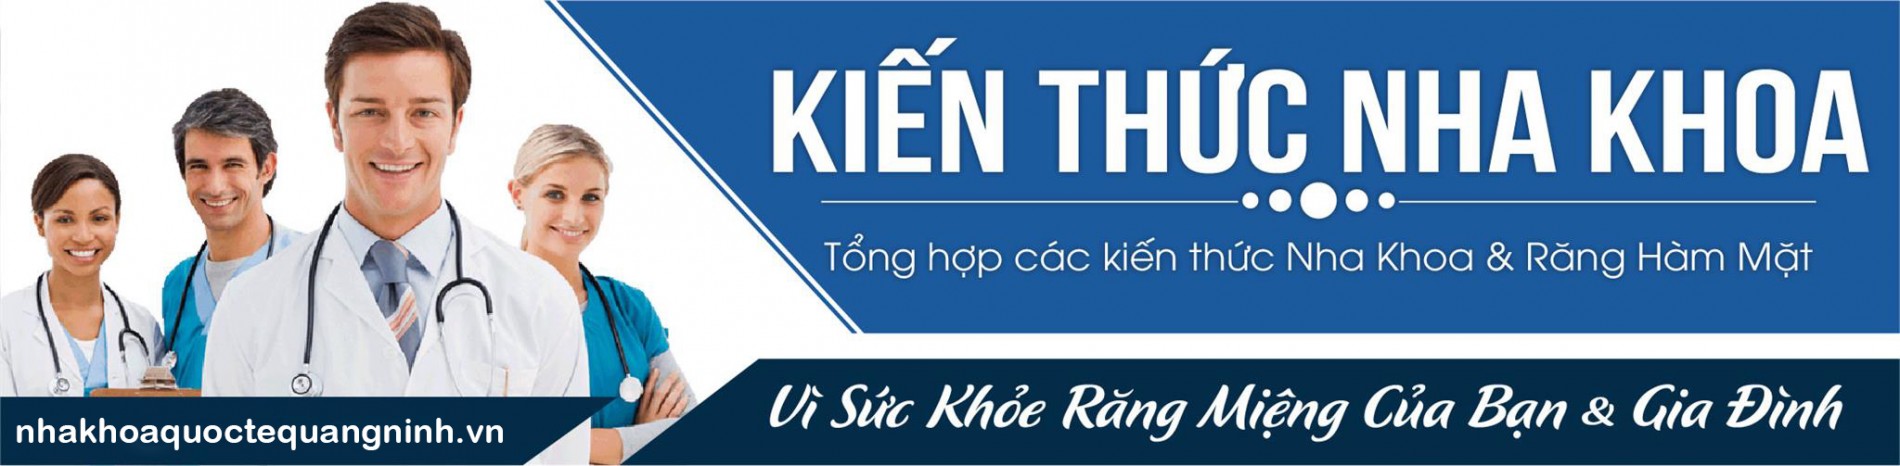 banner-kien-thuc-nha-khoa_1